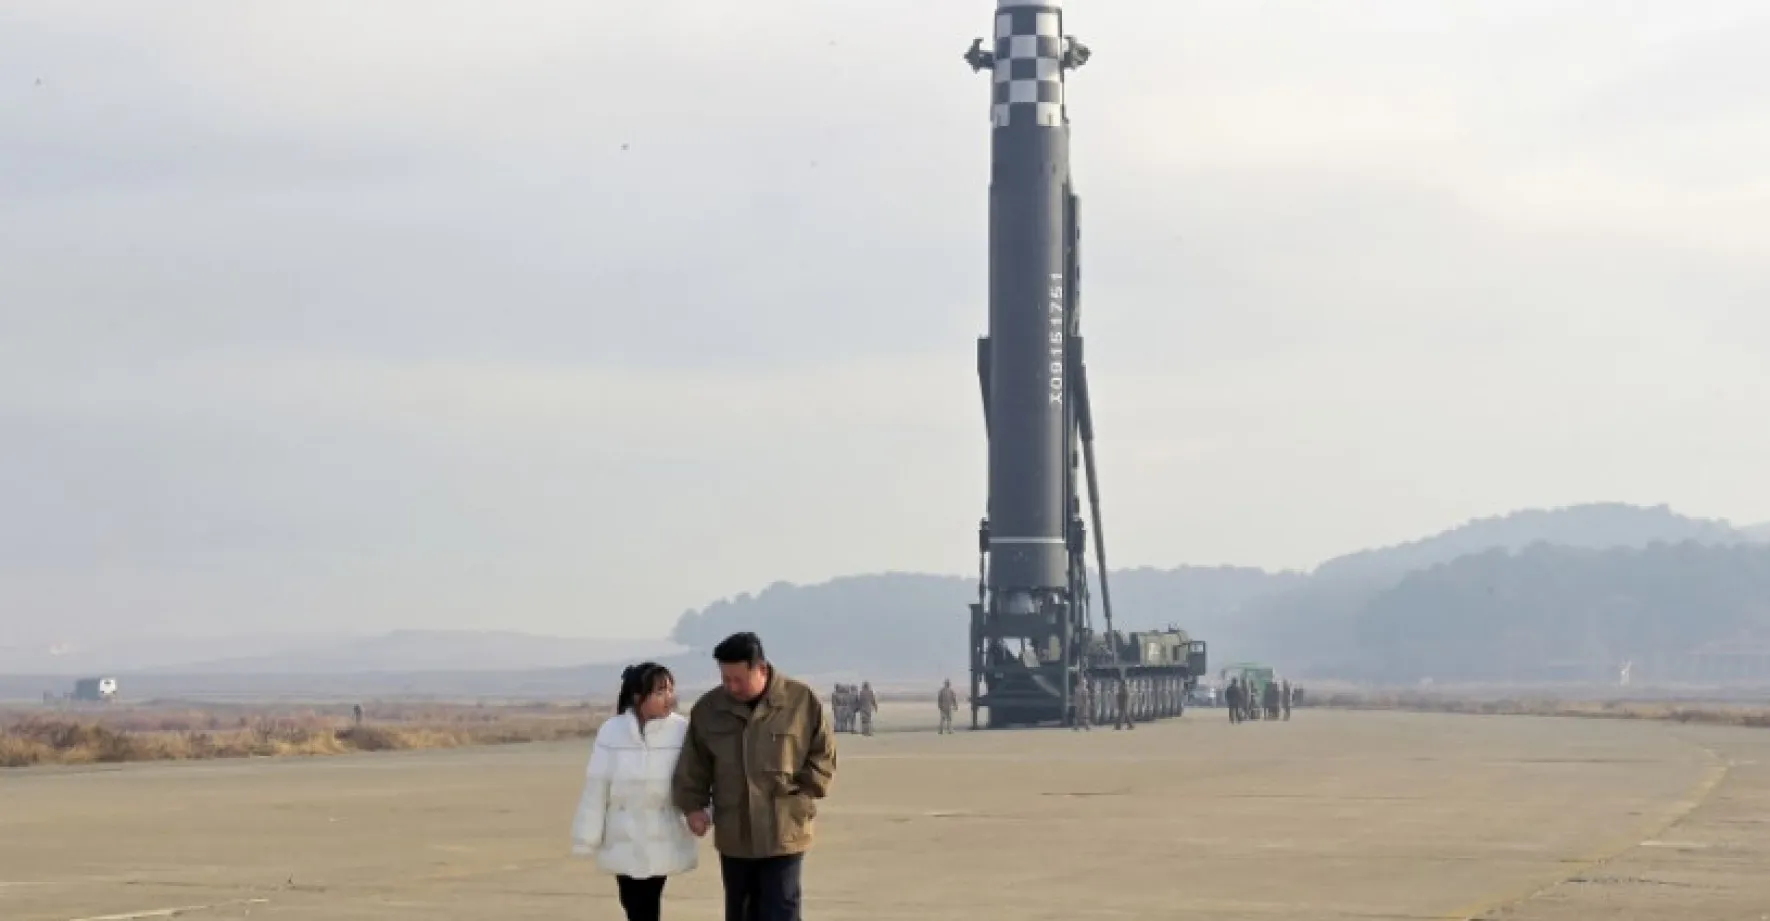 V atomovém komplexu KLDR je vysoká aktivita, Kim nařídil zvýšit výrobu jaderného materiálu